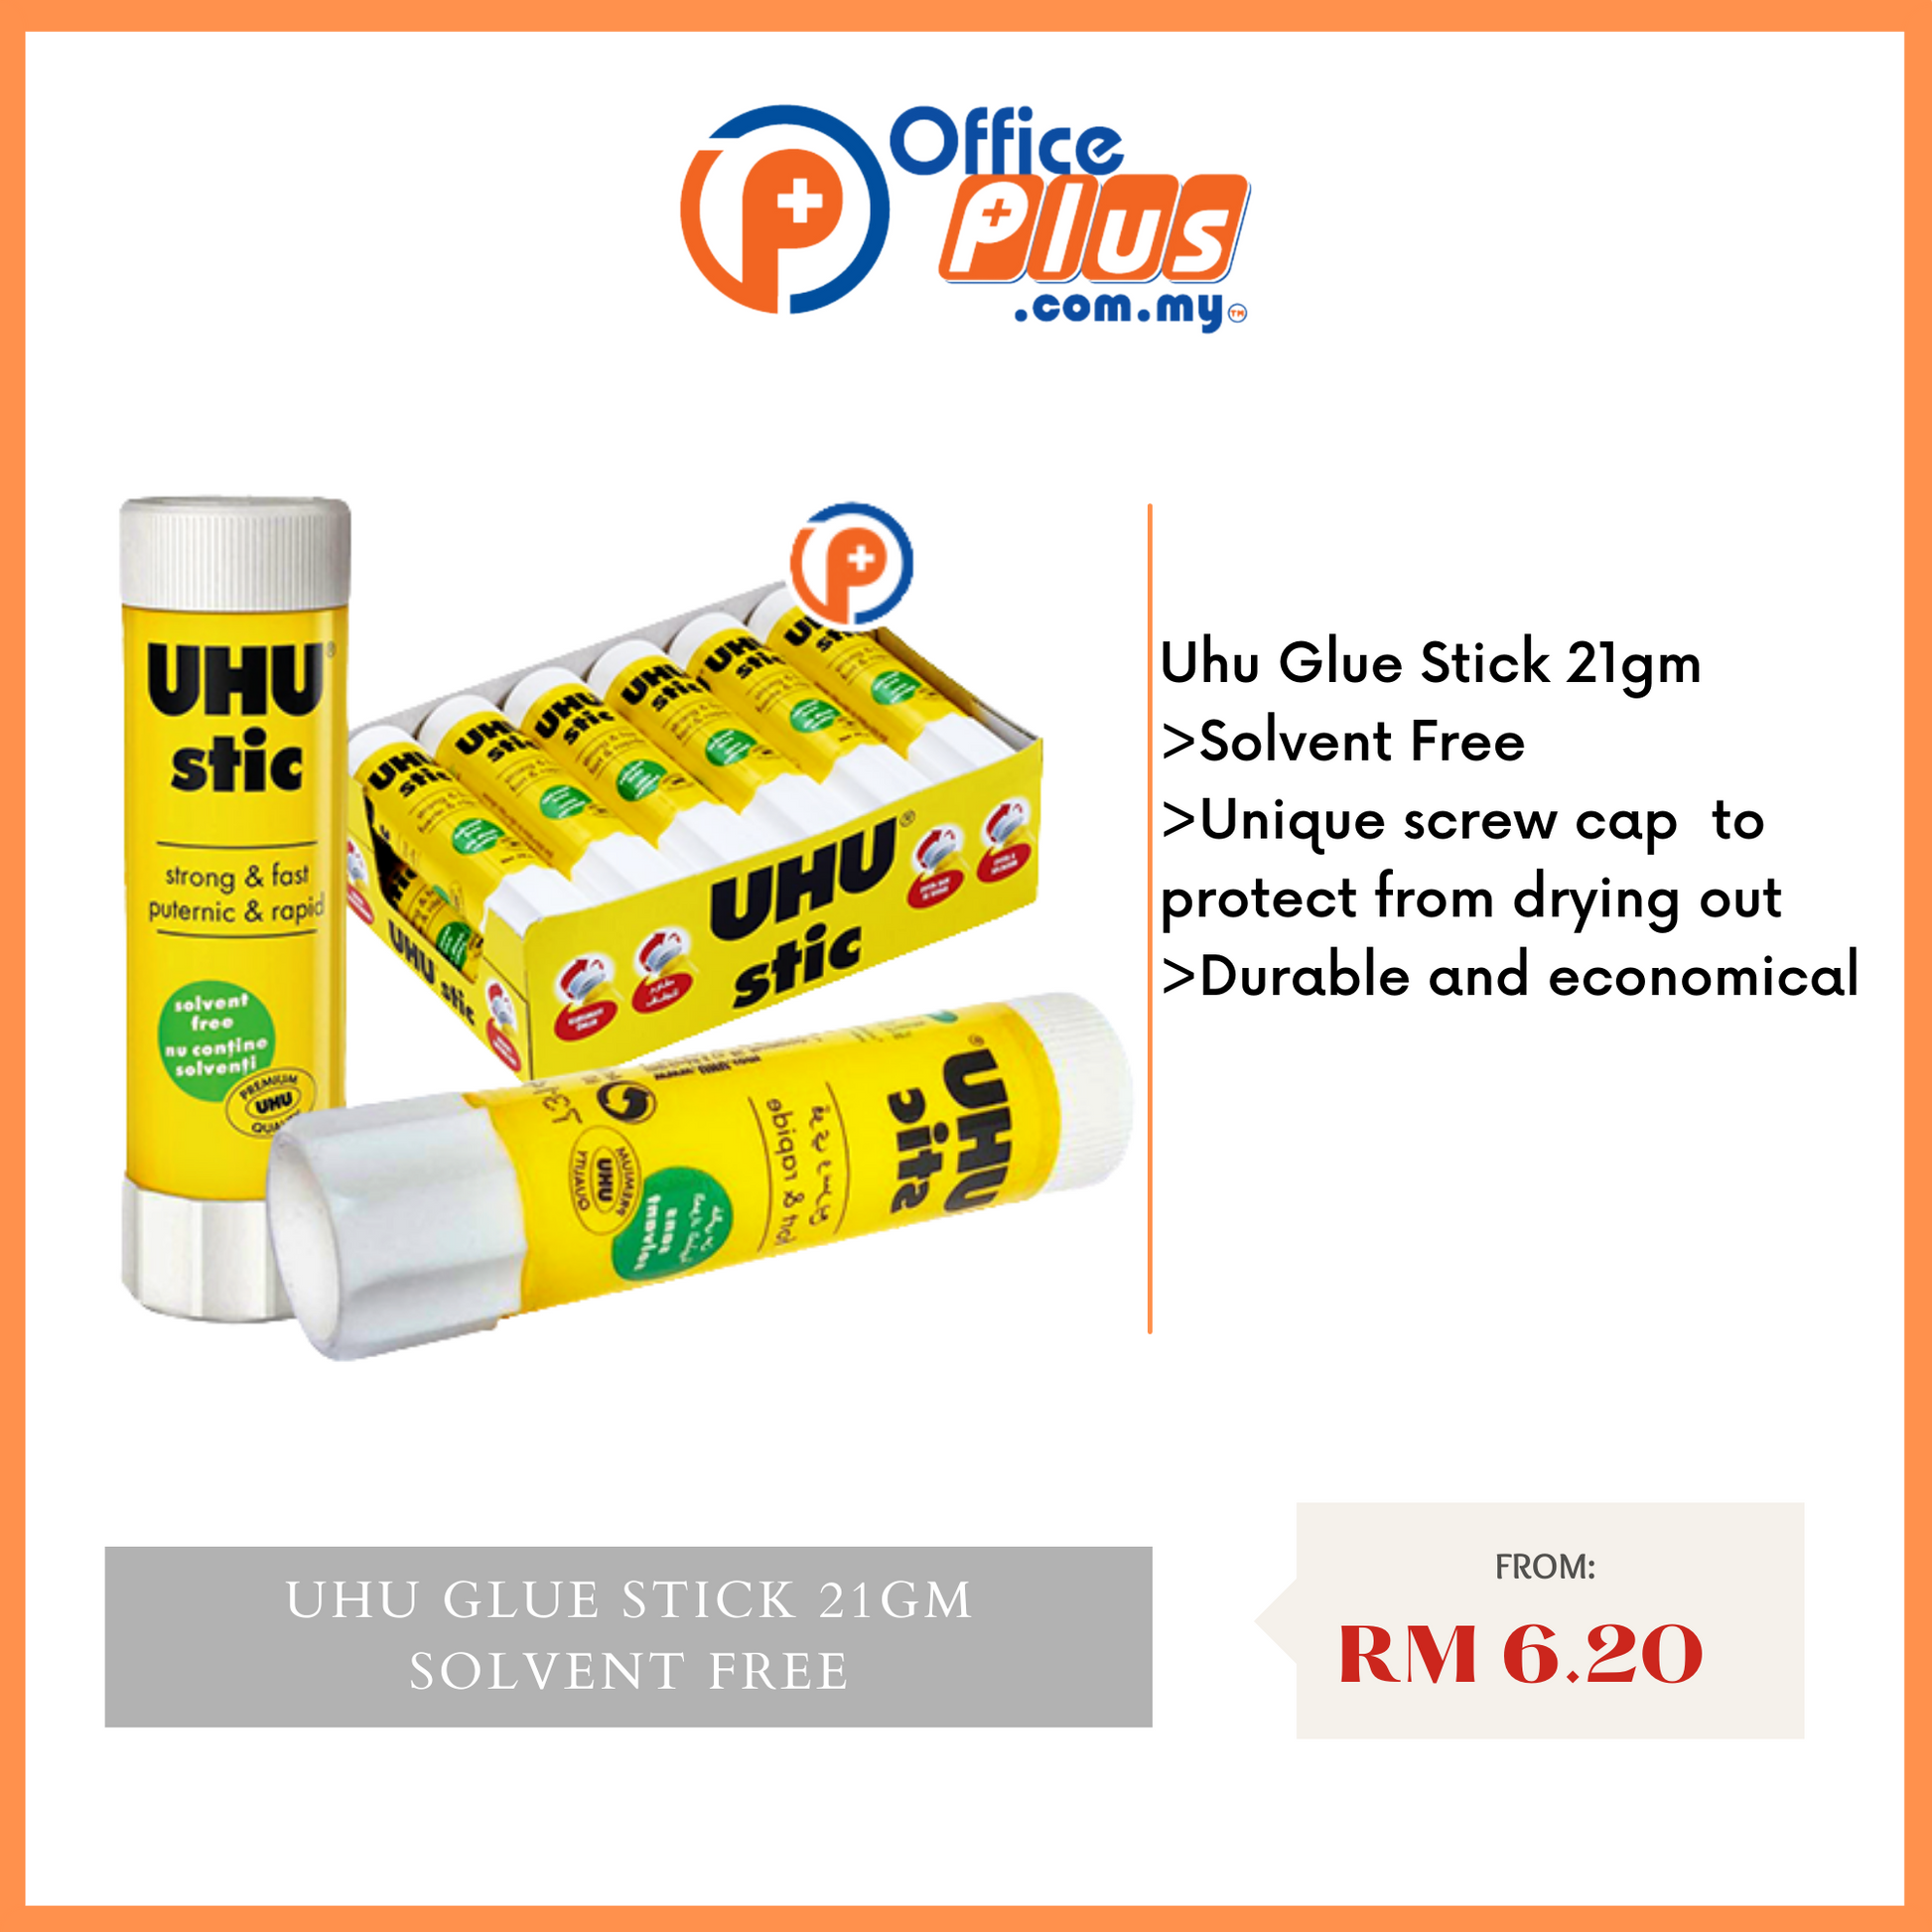 UHU stic - Glue stick solvent free